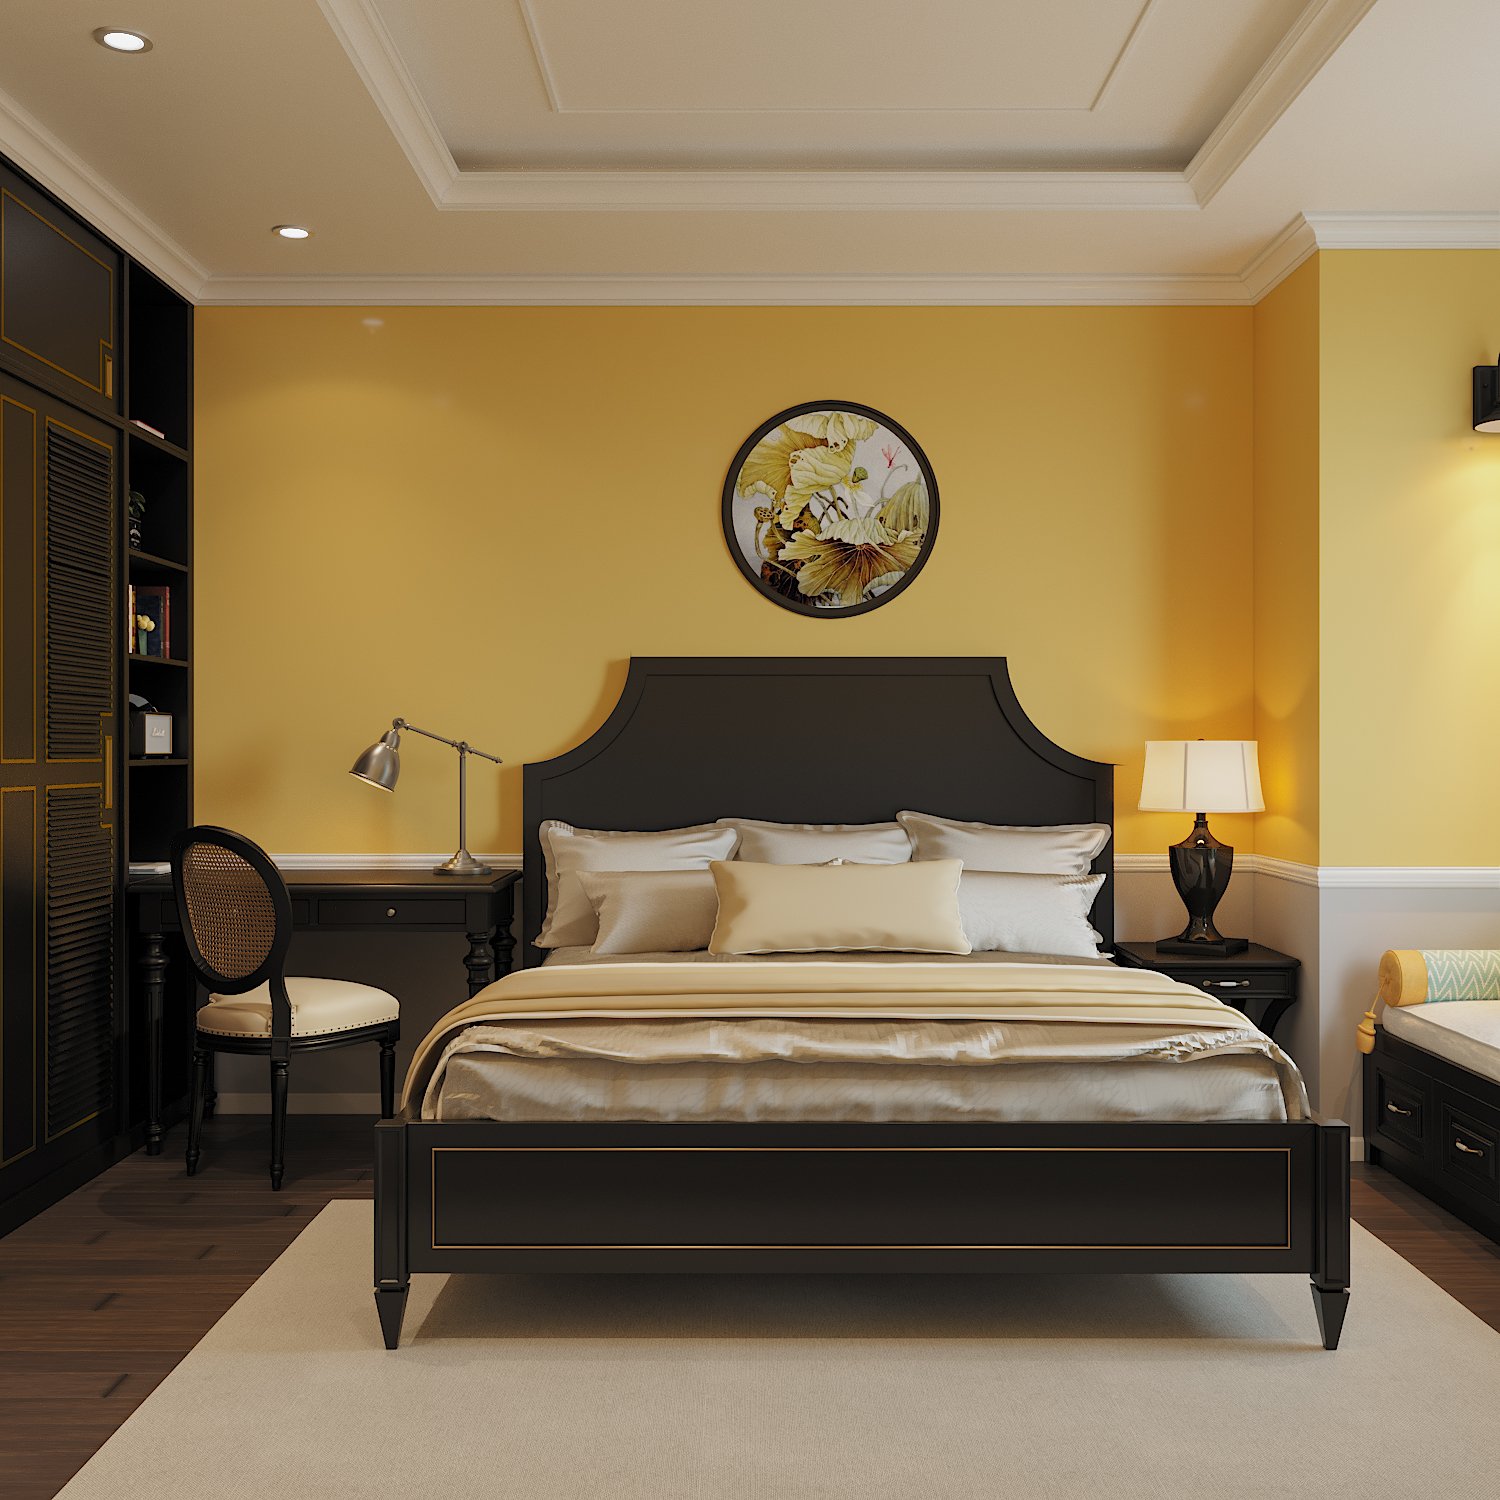 Phòng ngủ thứ hai được bài trí với tông màu vàng - đen kết hợp ăn ý, gợi nhớ về những ngôi nhà xưa ấm cúng.